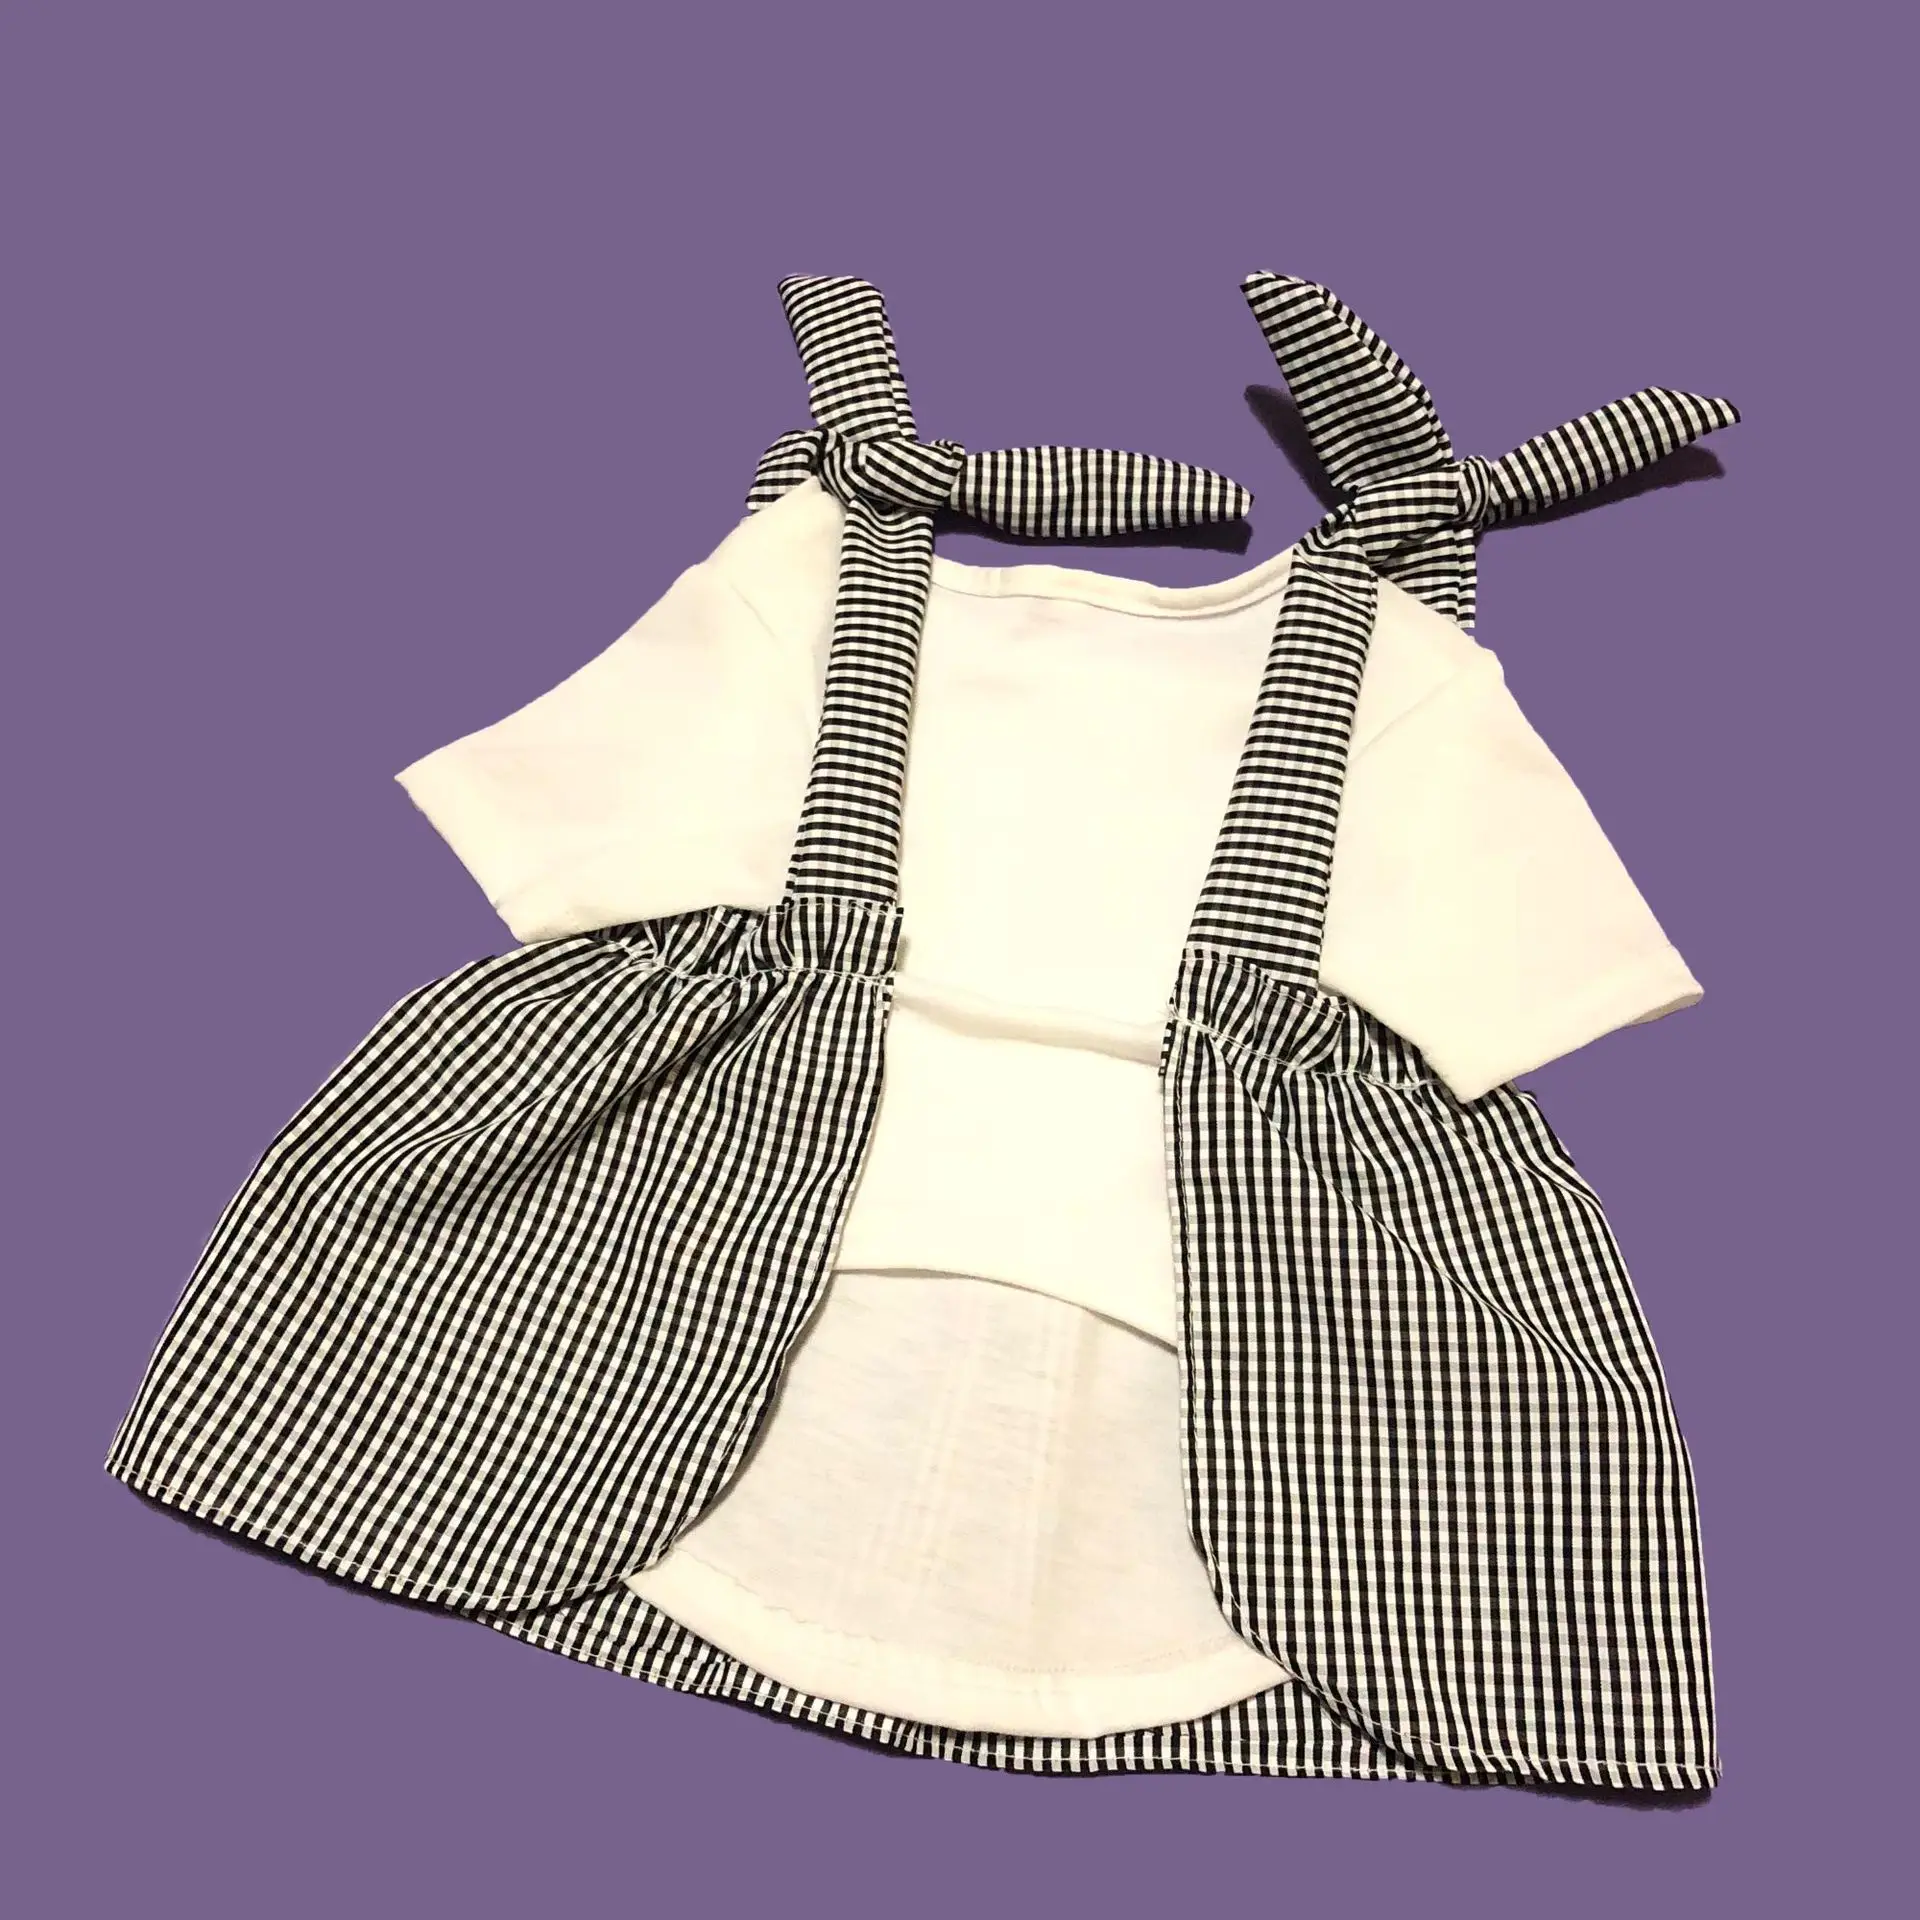 Хлопок померанский шпиц летом прохладно платье собака одежда для маленьких Одежда для собак Французский Бульдог-Мопс костюм Йоркширский одежда